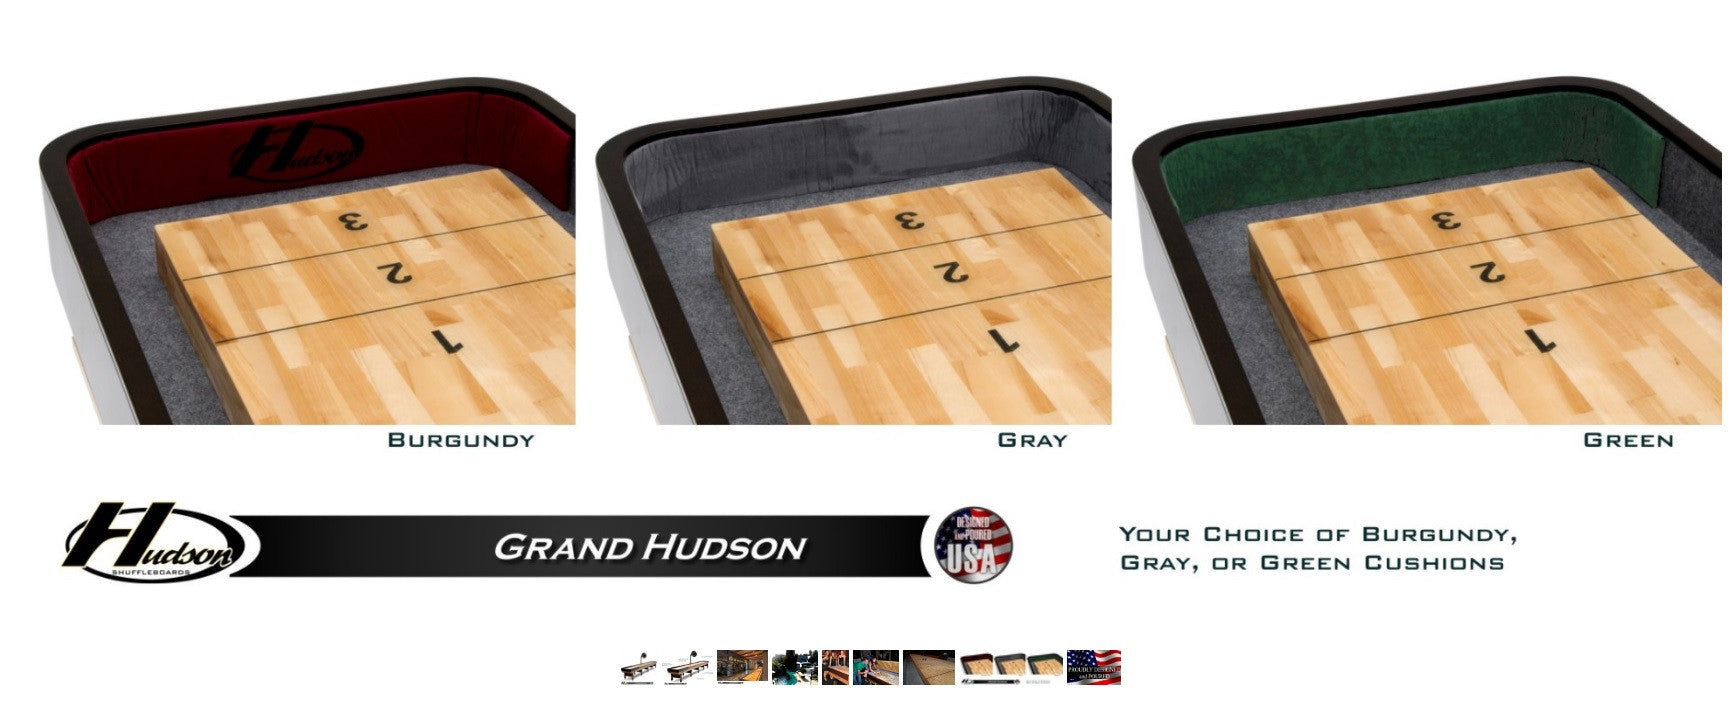 Hudson 14' Grand Hudson Shuffleboard